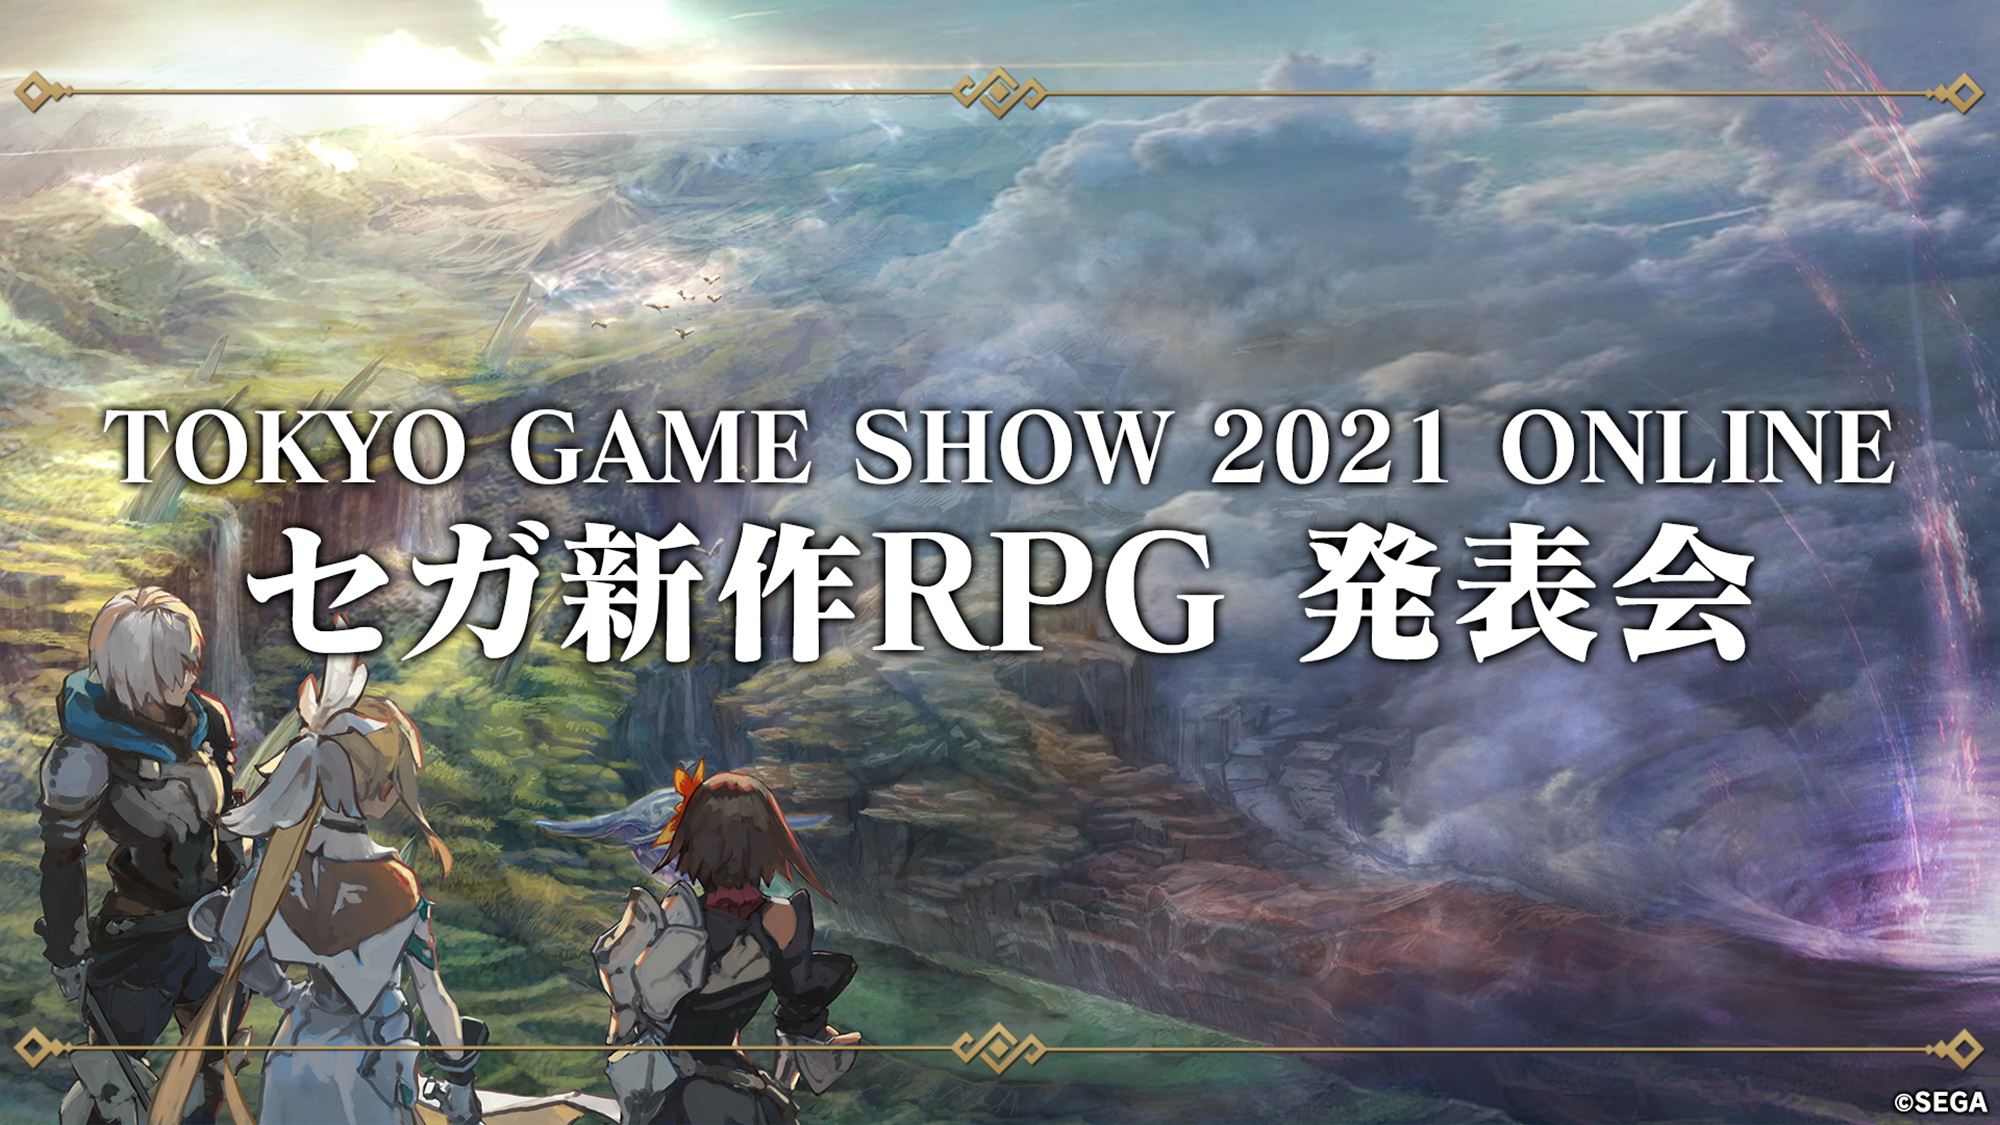 東京ゲームショウ21オンラインで謎の新作rpgの全貌が明らかに セガ新作rpg 発表会 で新たなる物語が幕を開ける Game Watch